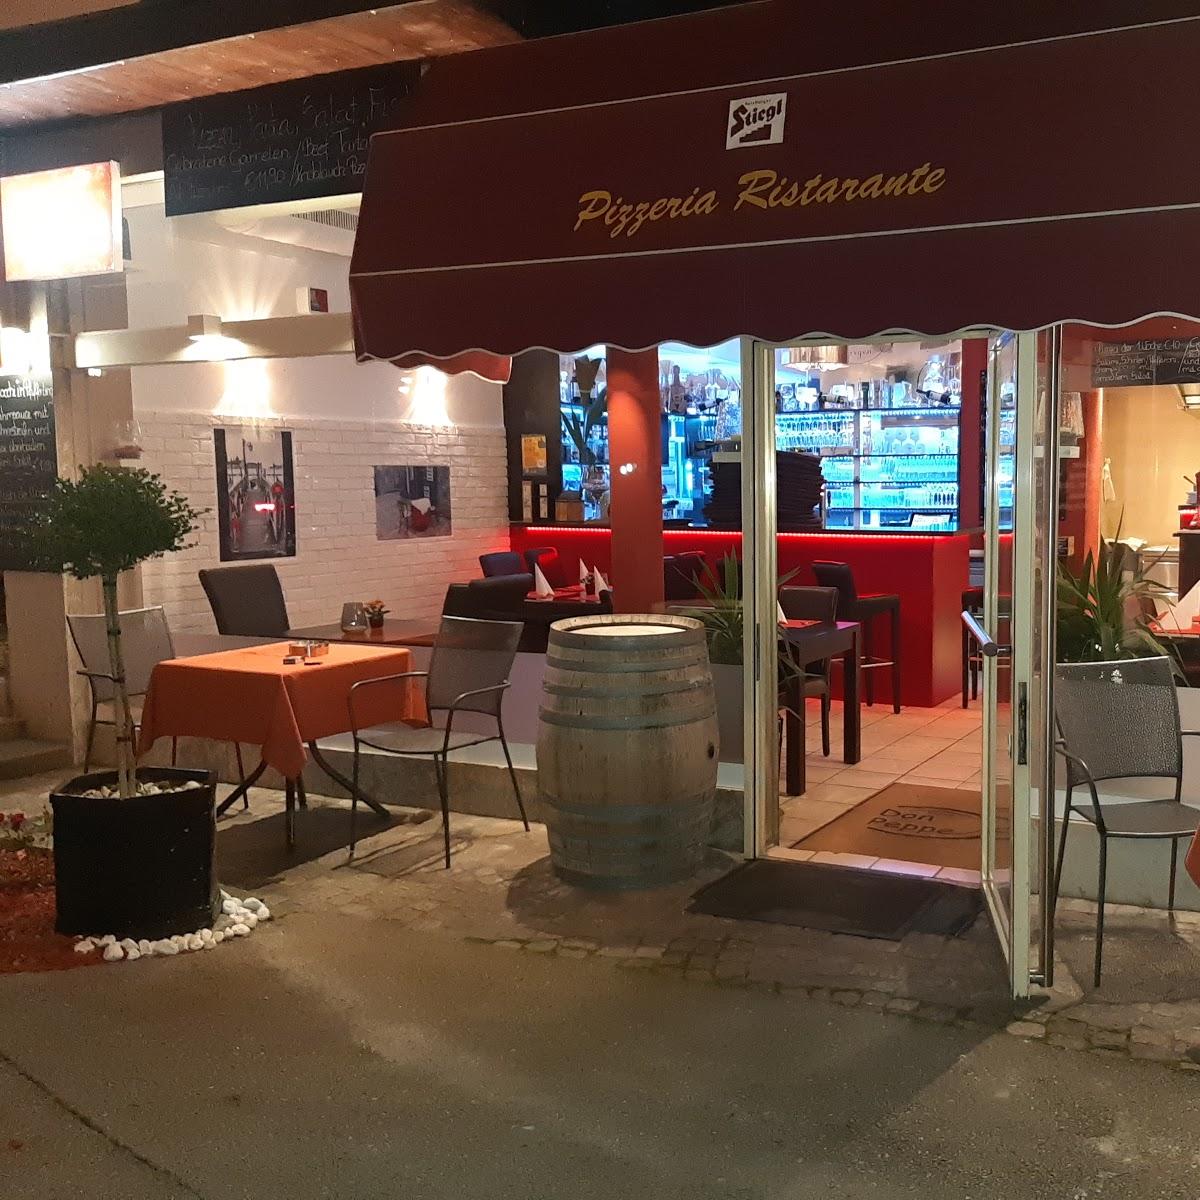 Restaurant "Pizzeria Don Peppe" in Wörgl